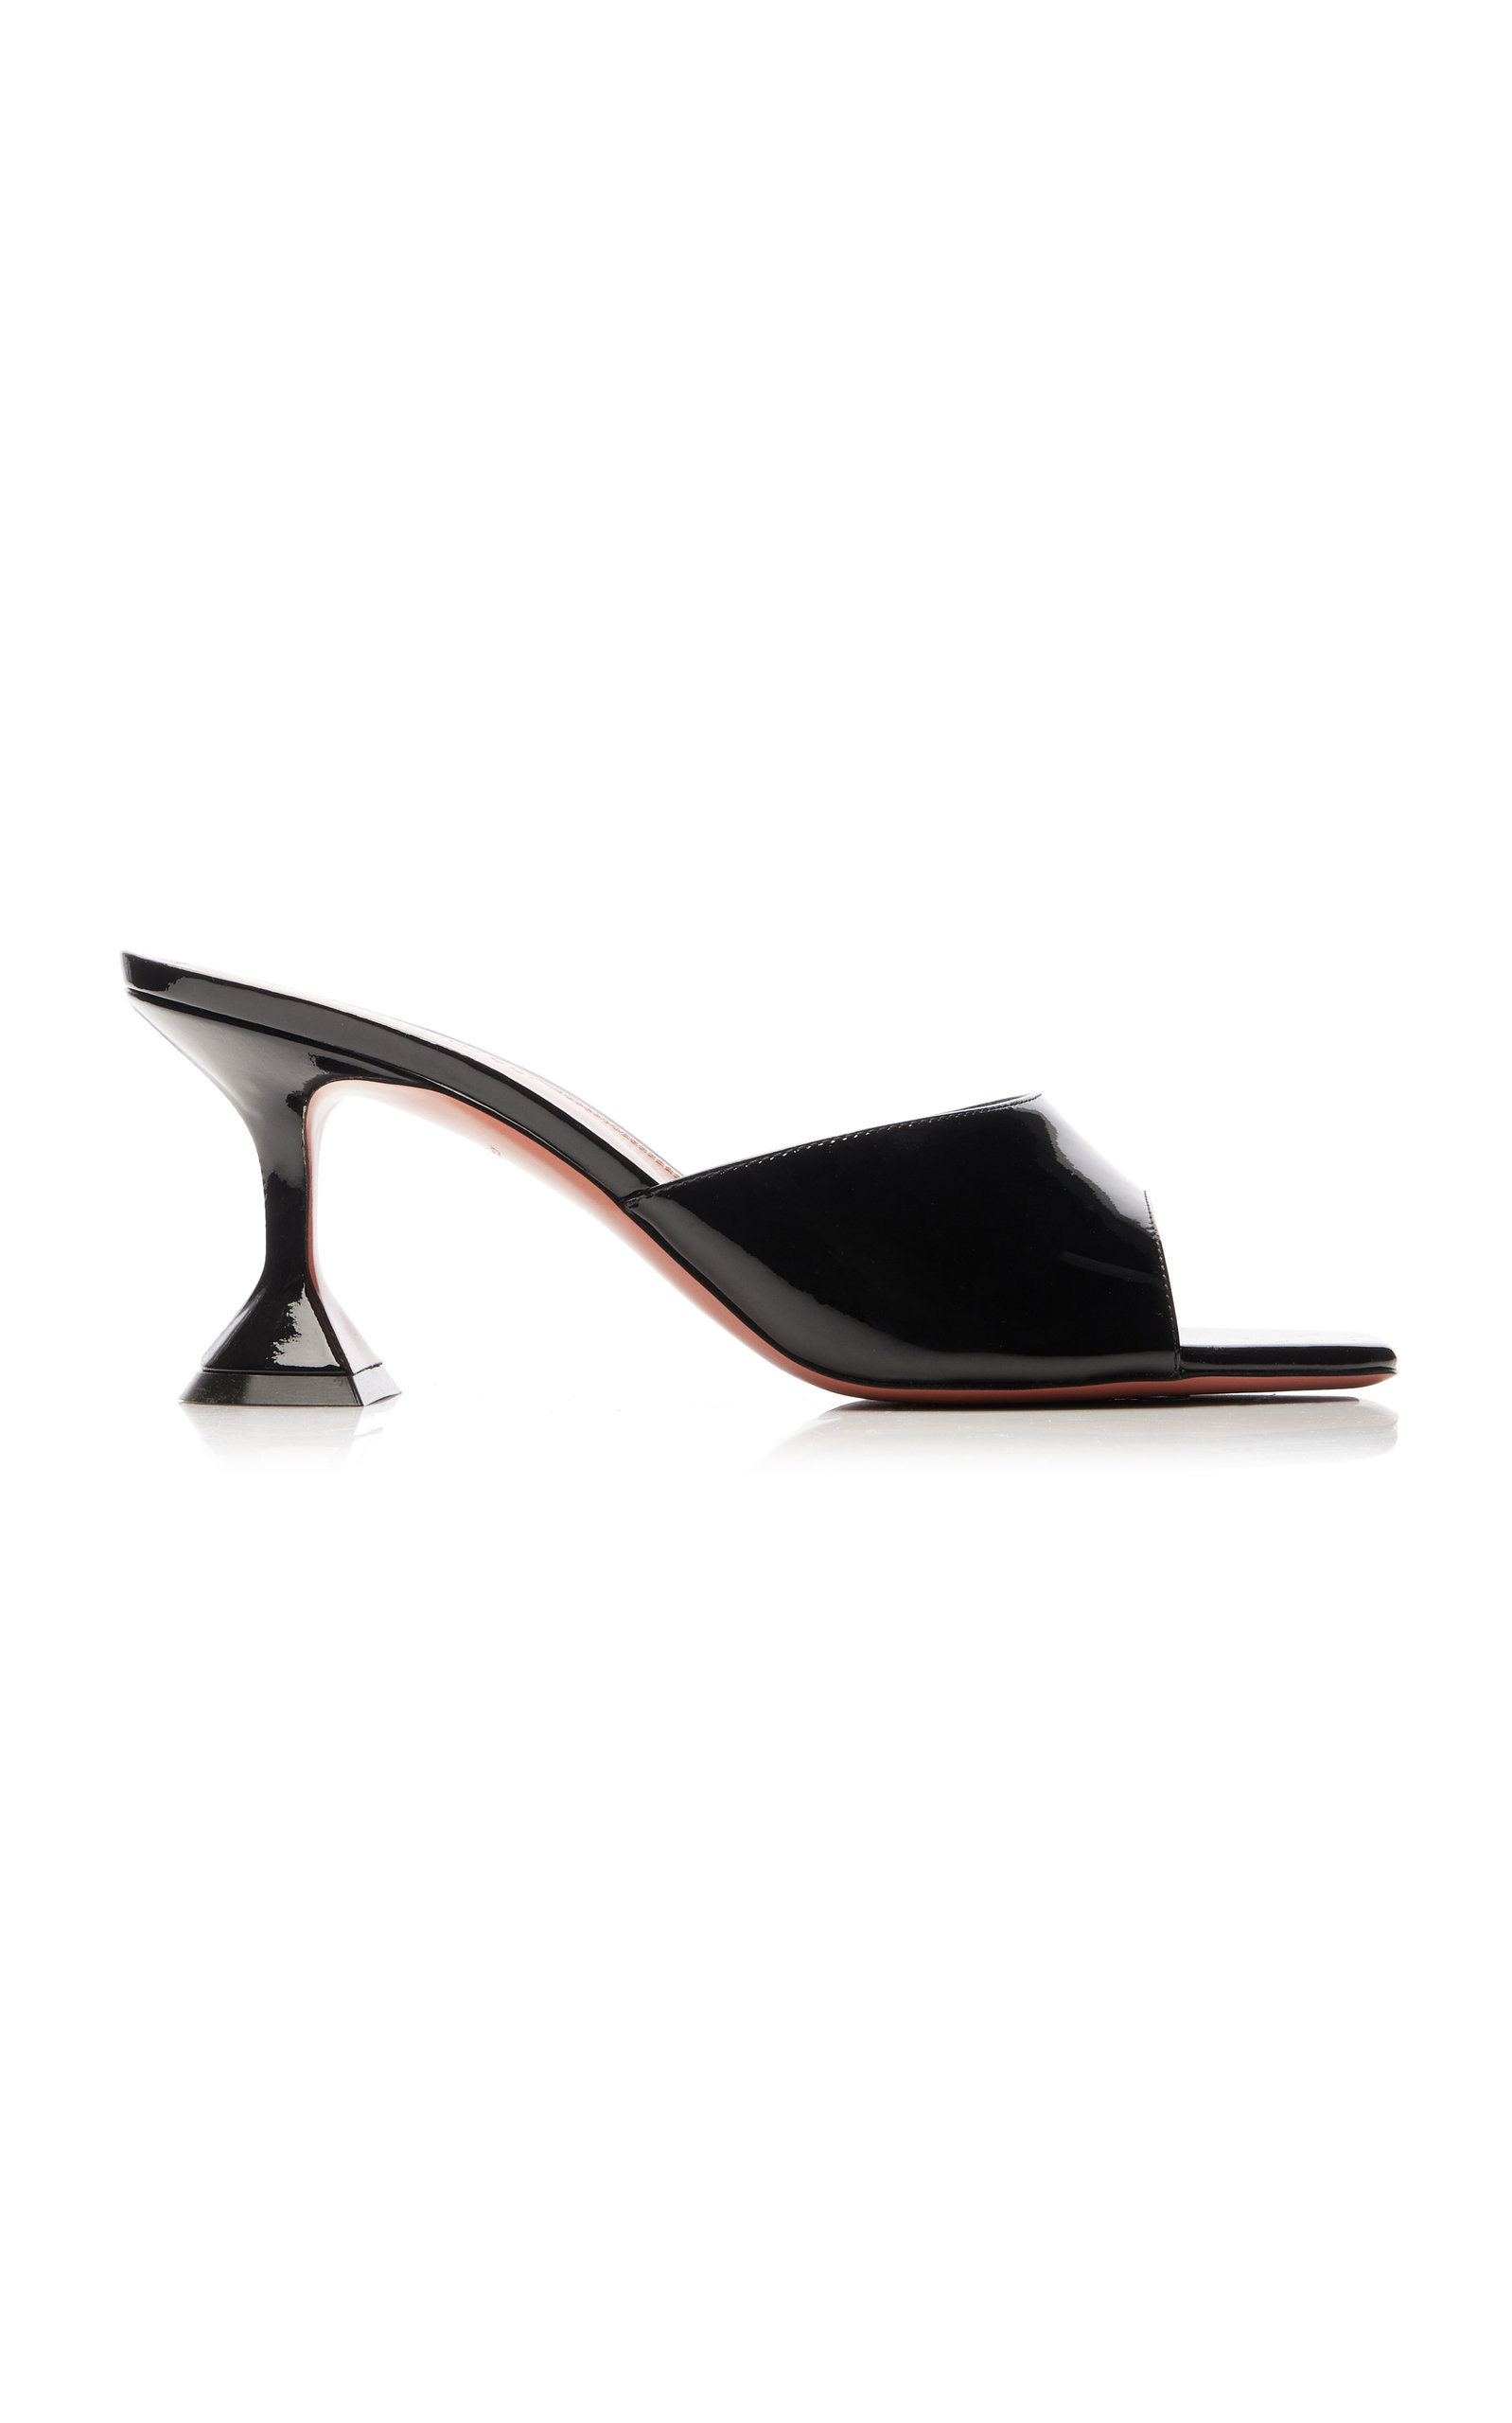 Amina Muaddi - Lupita Patent Leather Sandals - Black - IT 39.5 - Moda Operandi